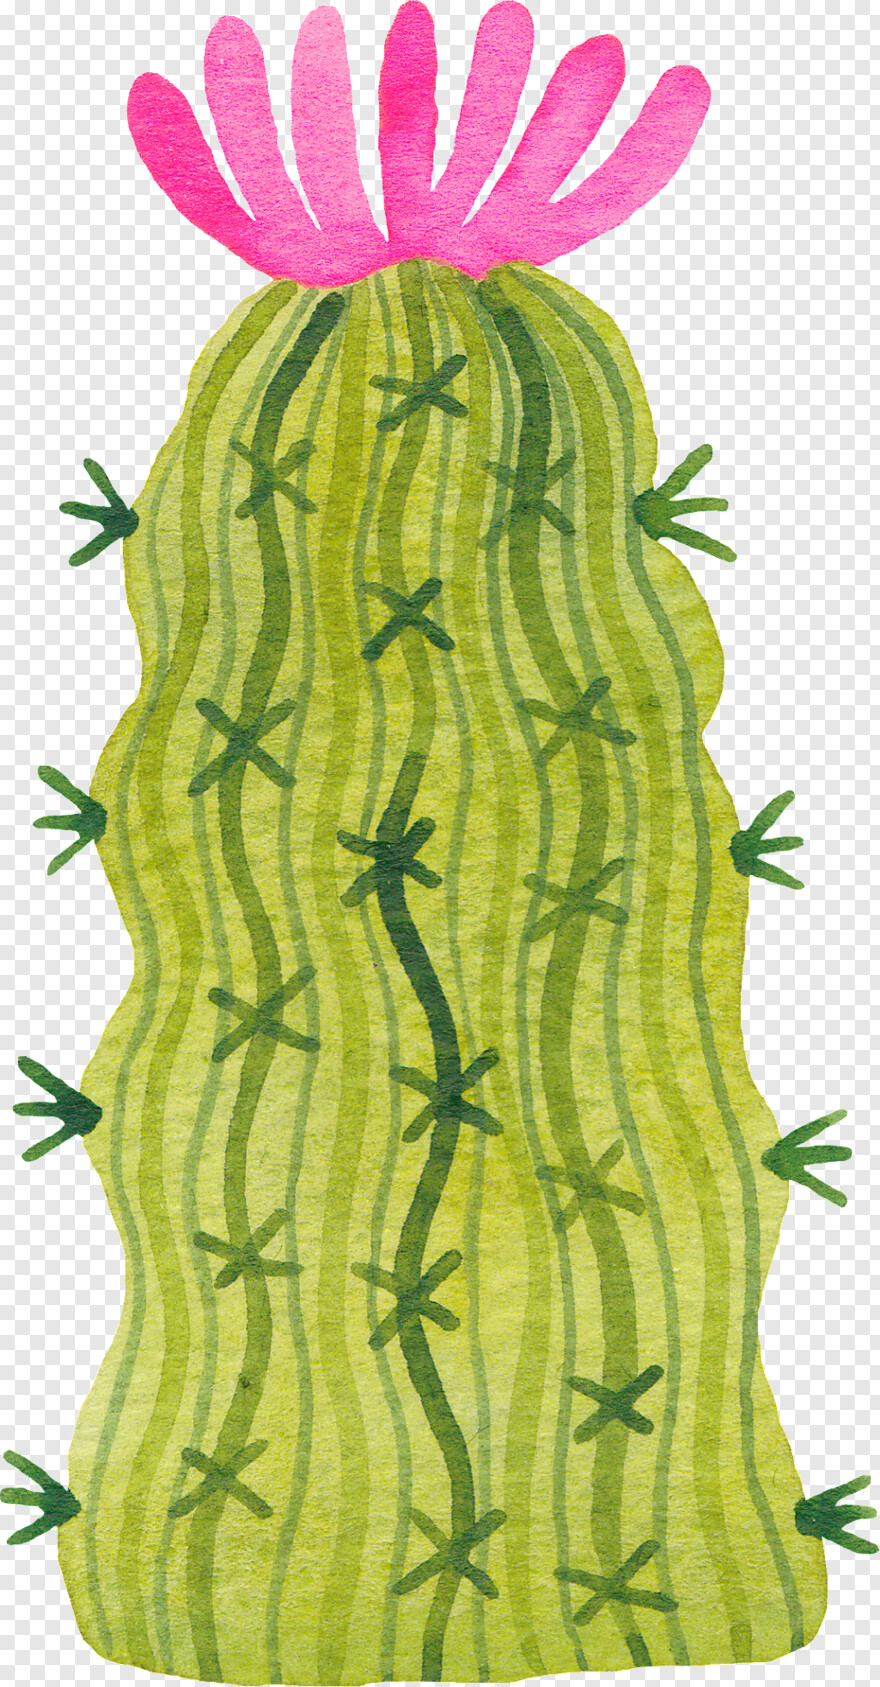 cactus-silhouette # 1088871